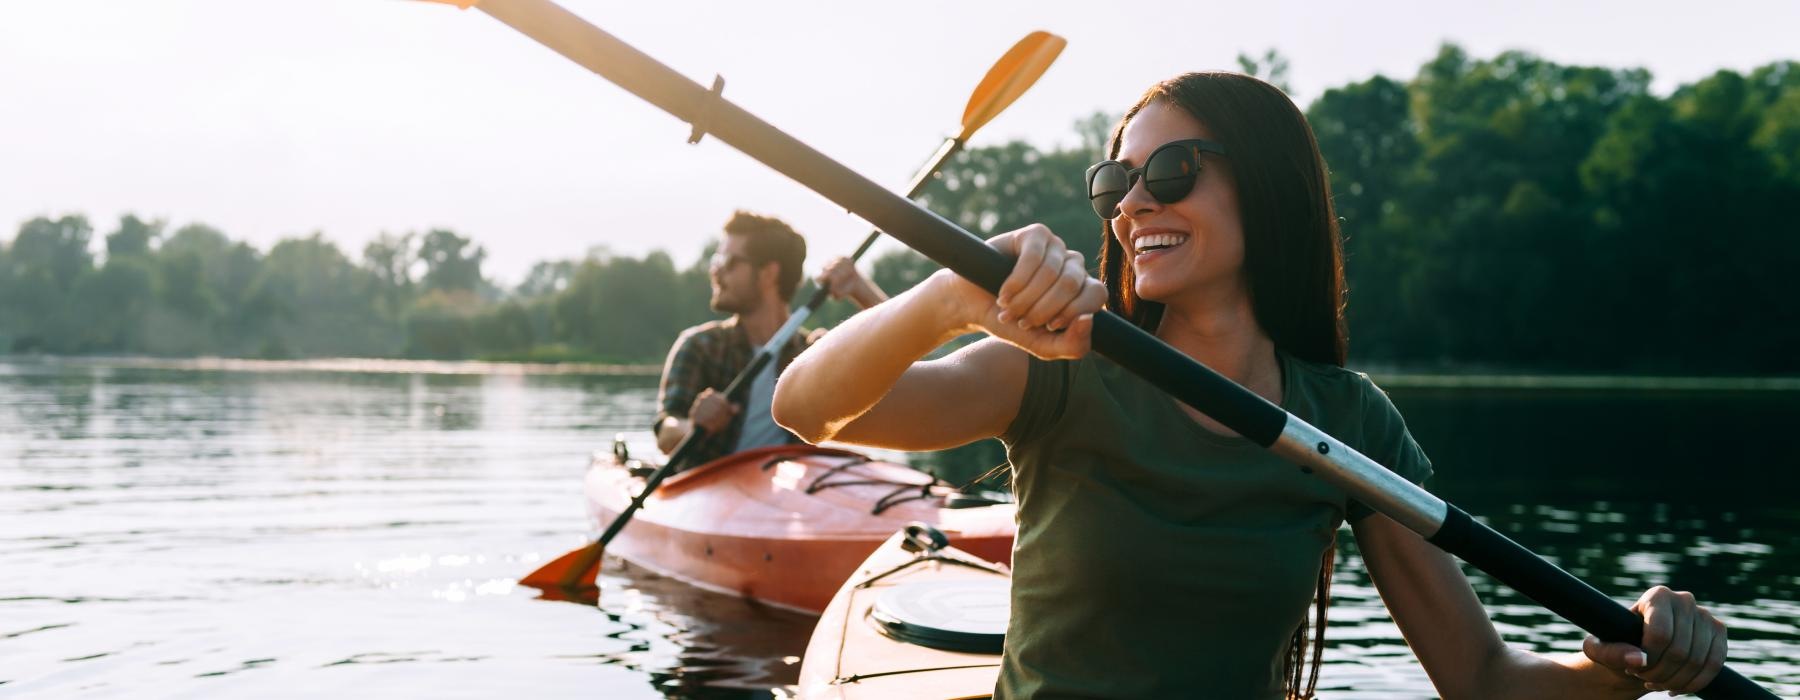 woman and man kayak on a lake